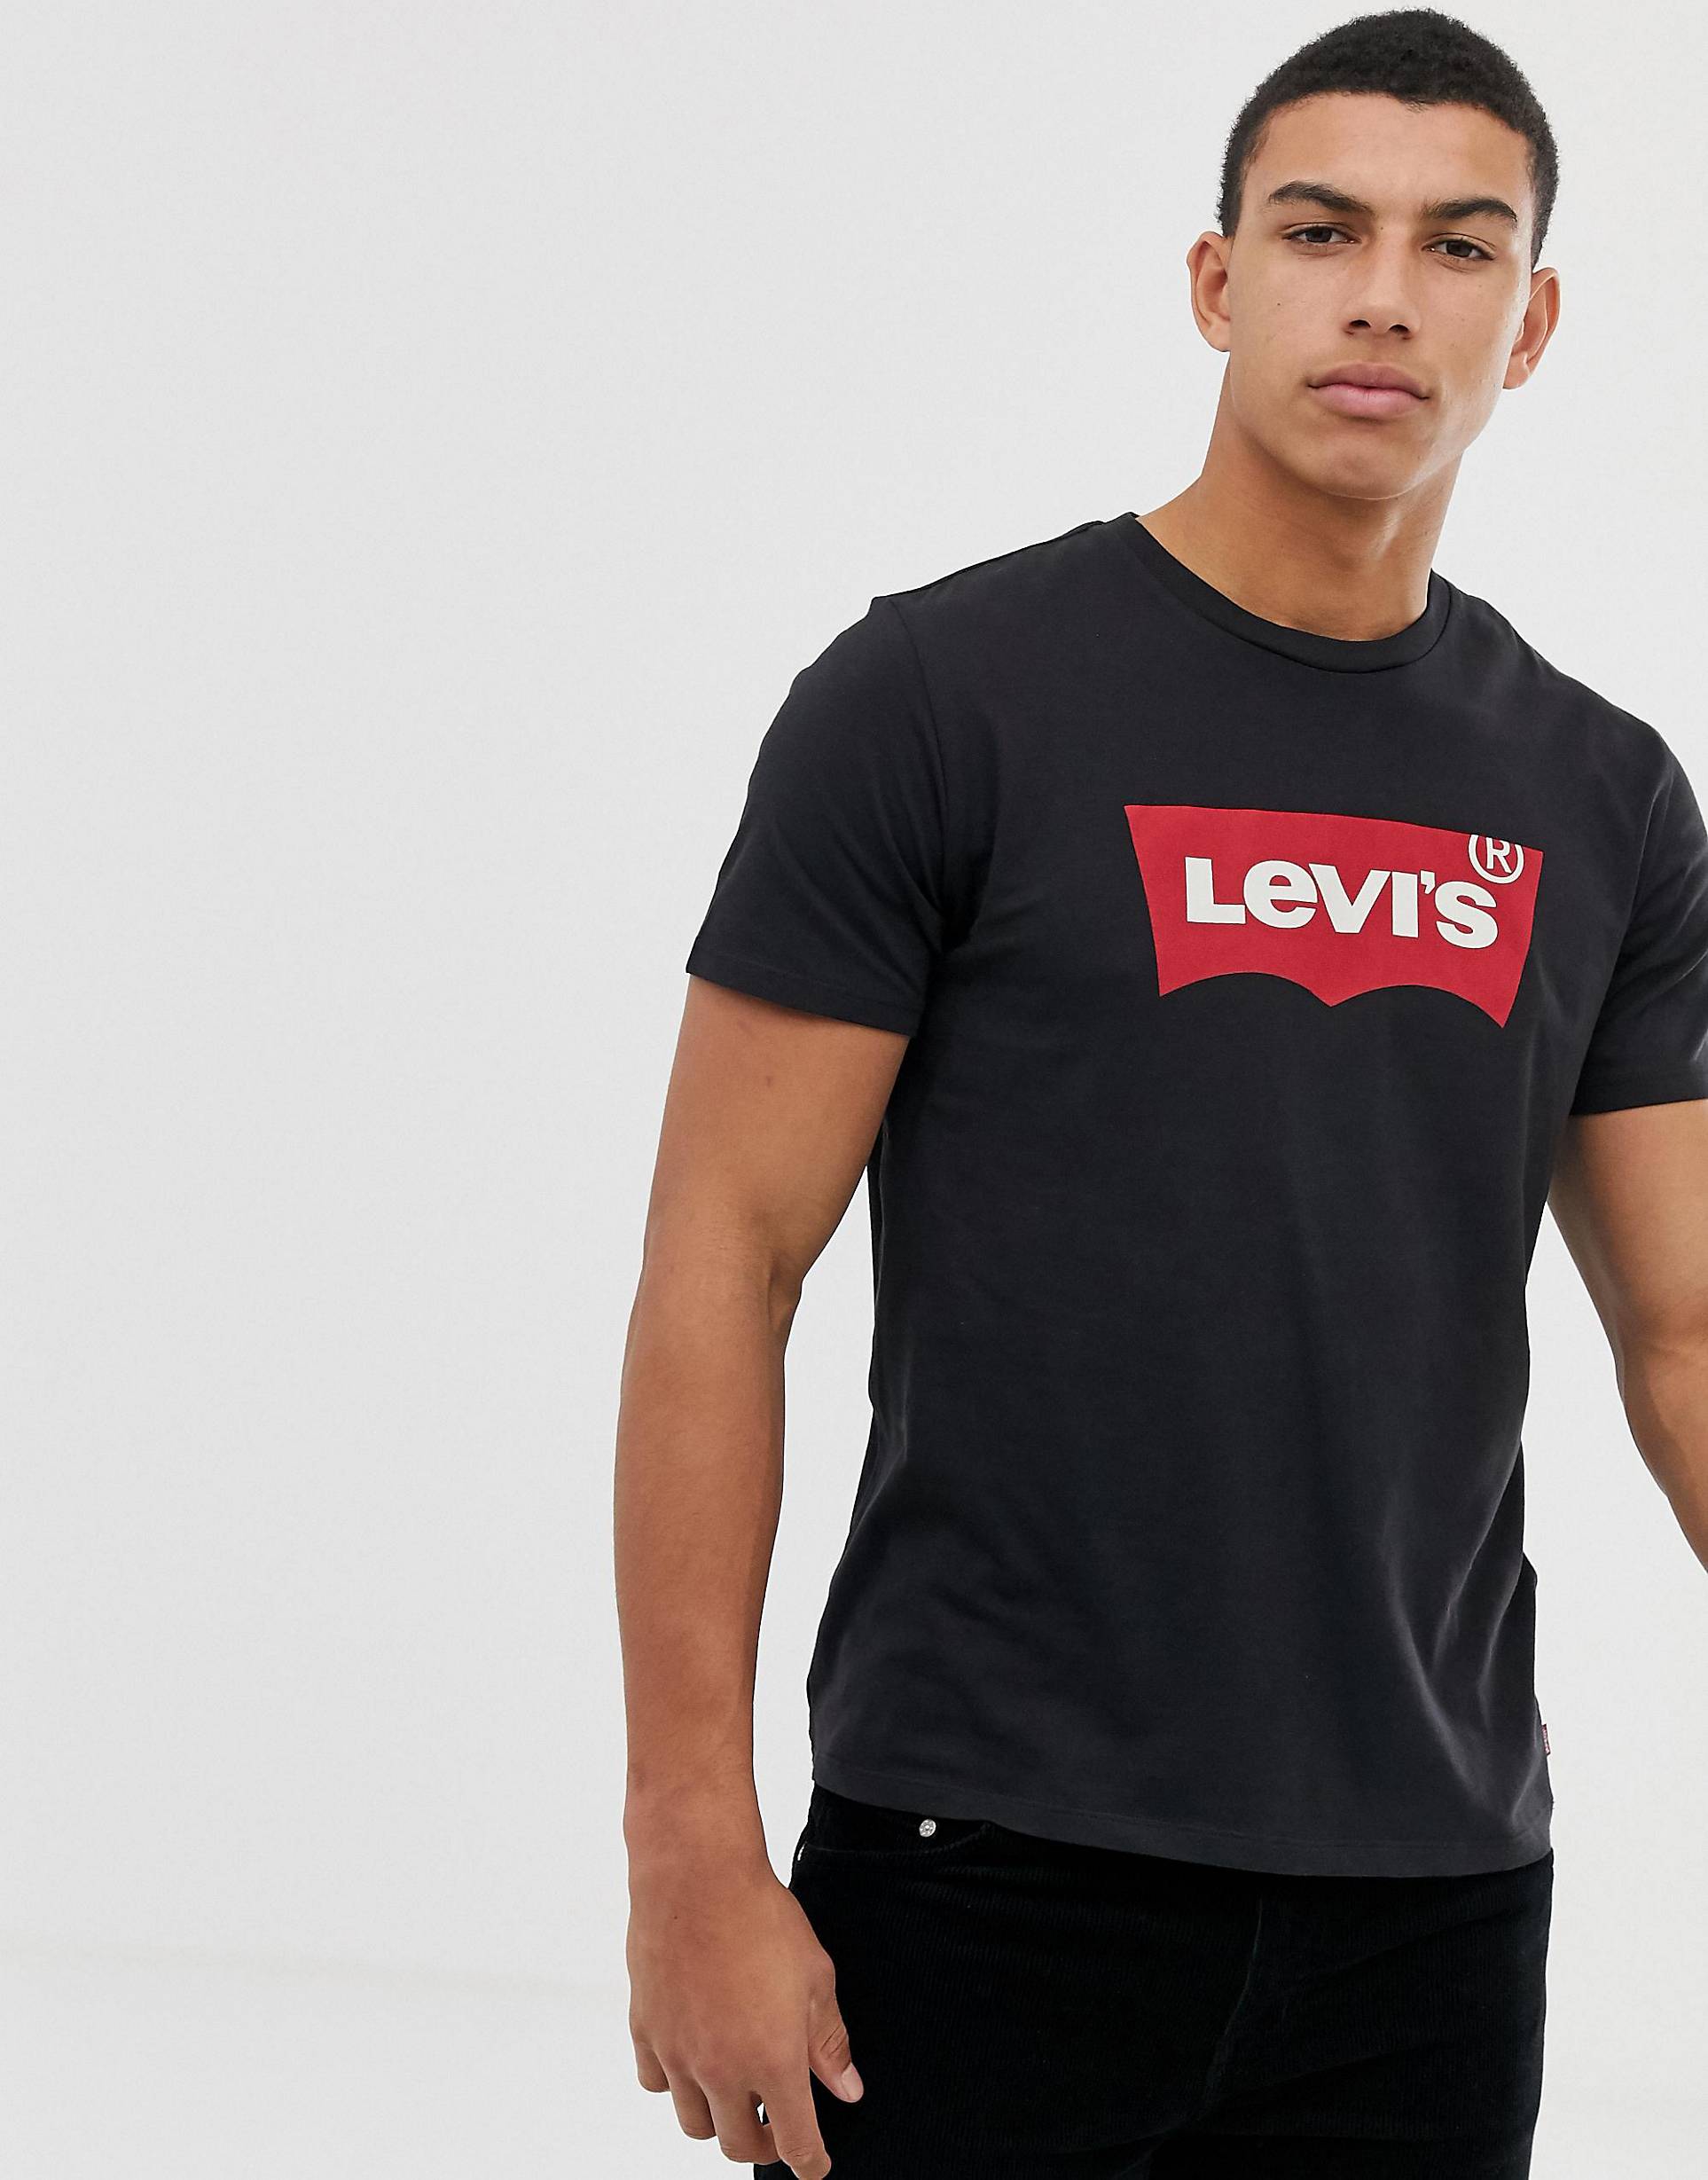 Купить футболку levis. Левайс майка черная мужская. Футболка левайс черная мужская. Levis футболка мужская черная. Levis logo футболка.